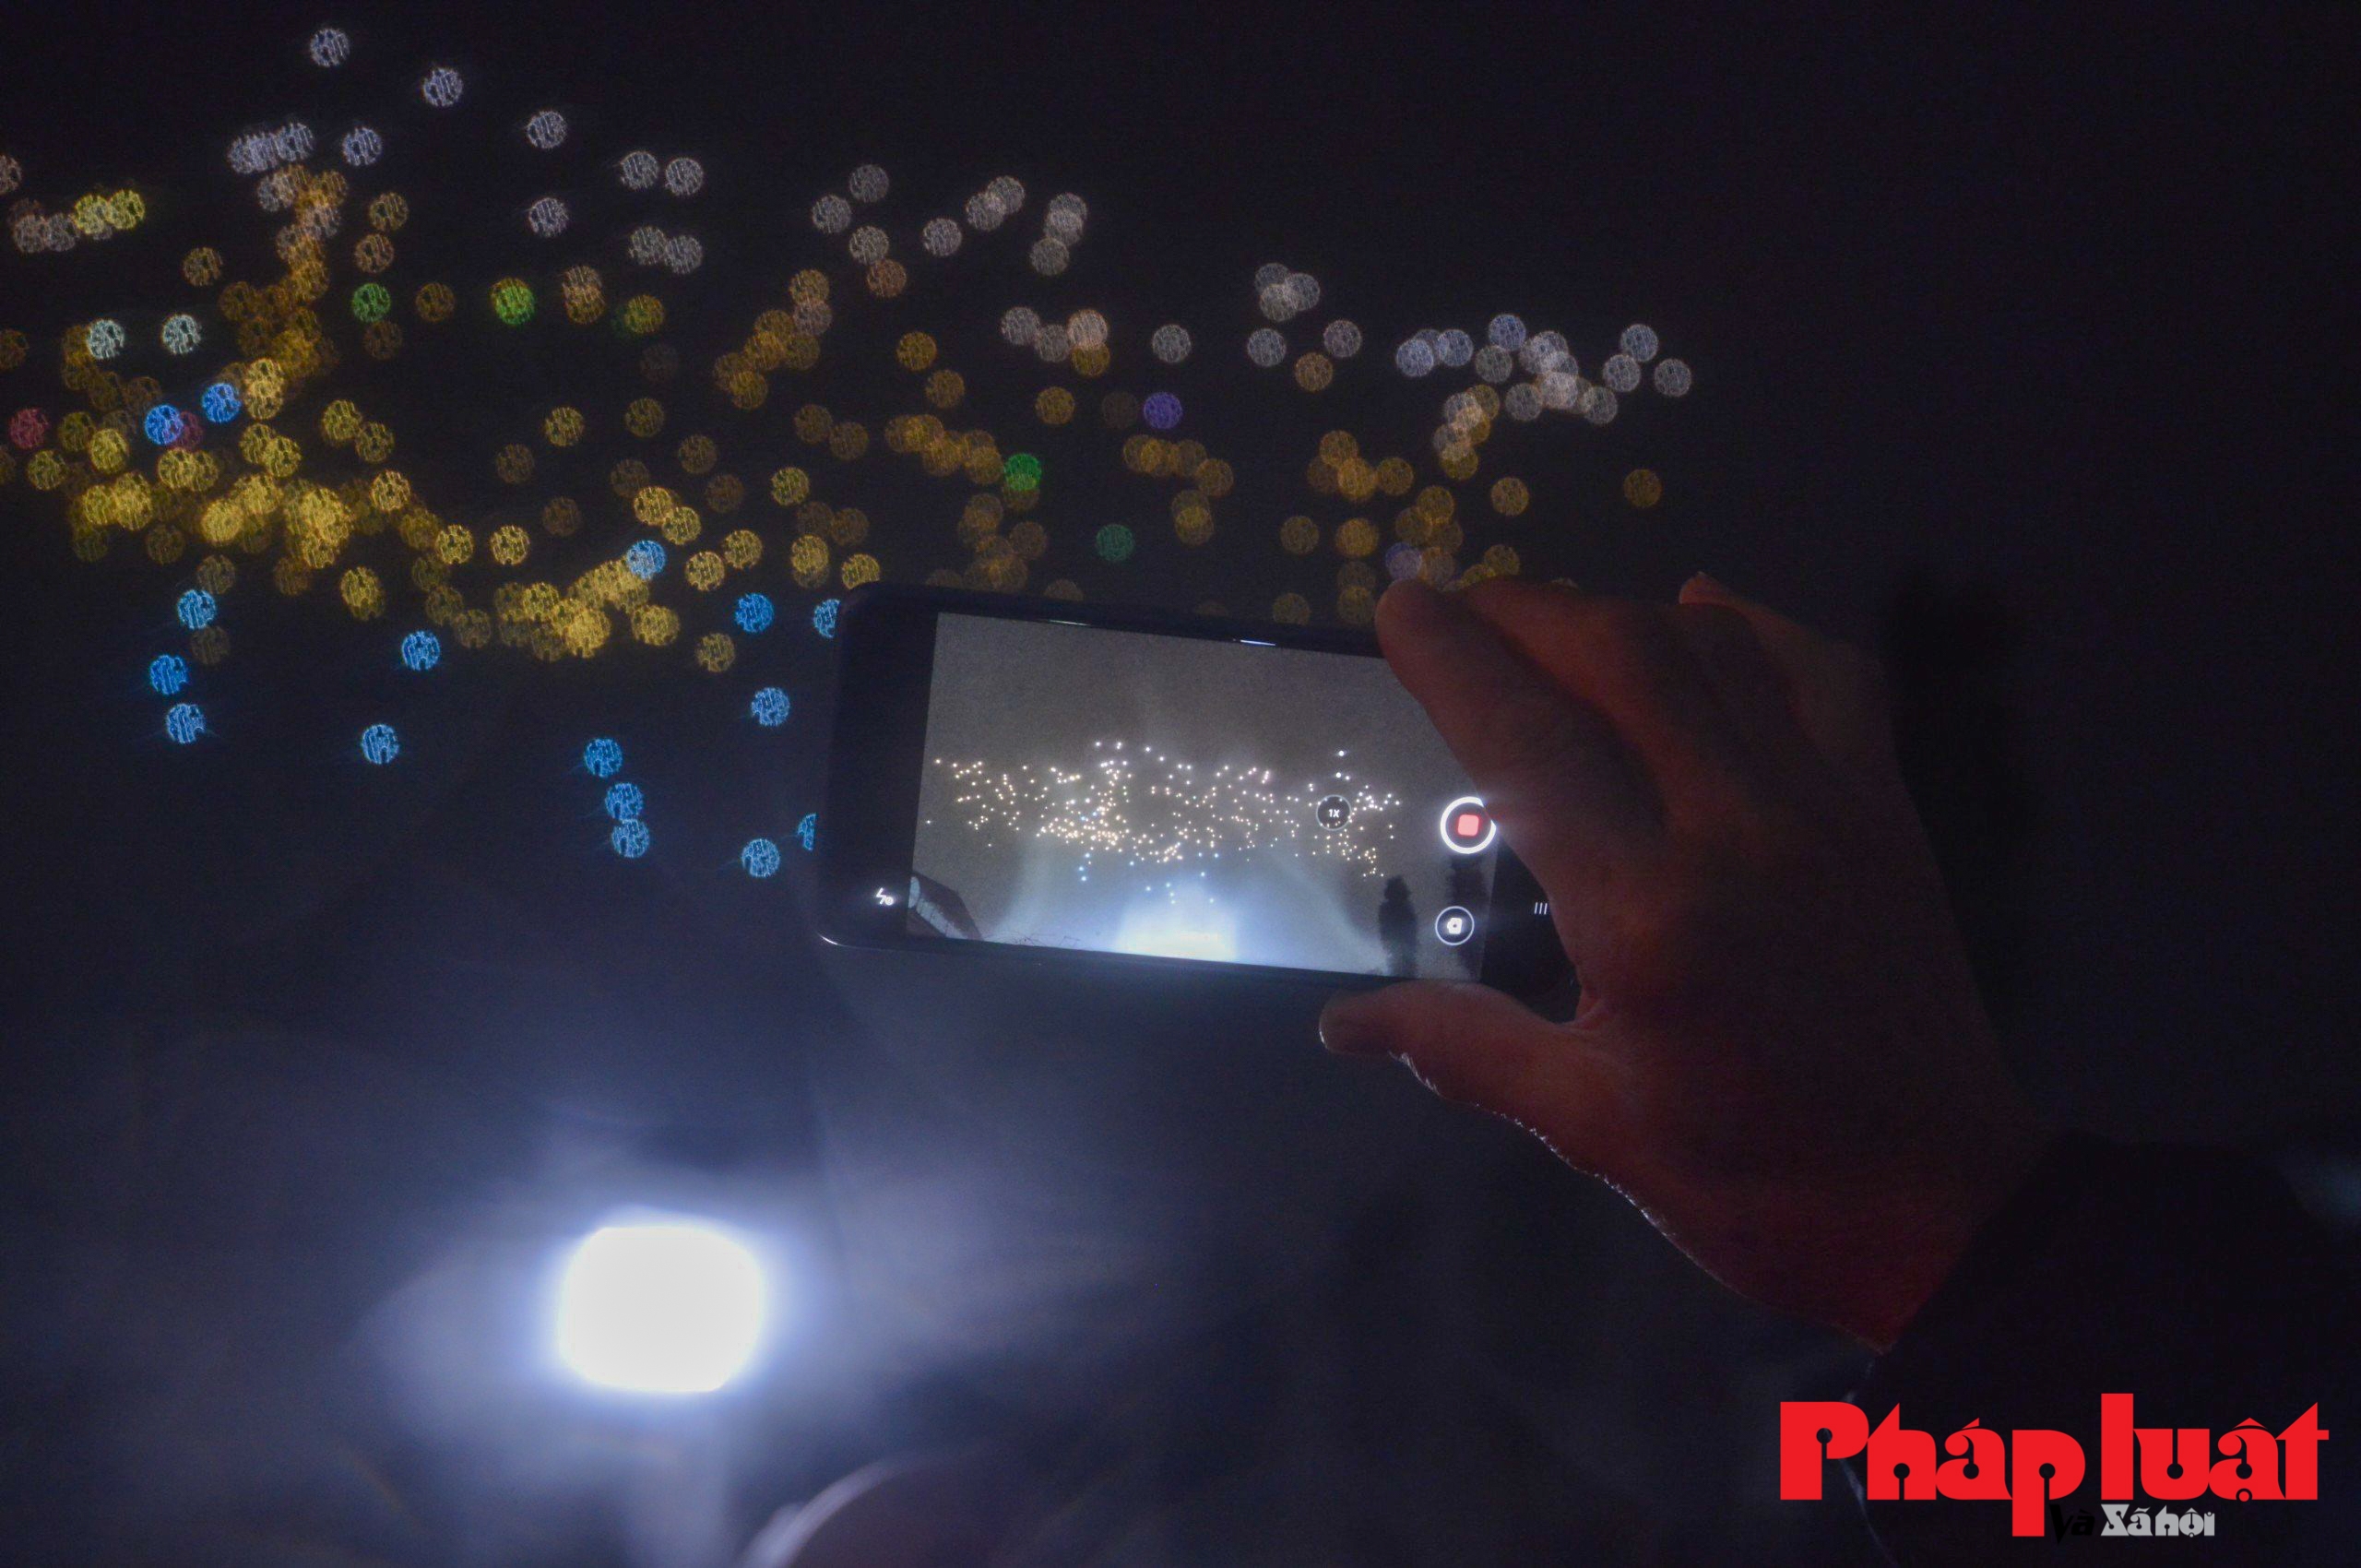 Mãn nhãn màn trình diễn drone ánh sáng mừng năm mới trên bầu trời Hà Nội